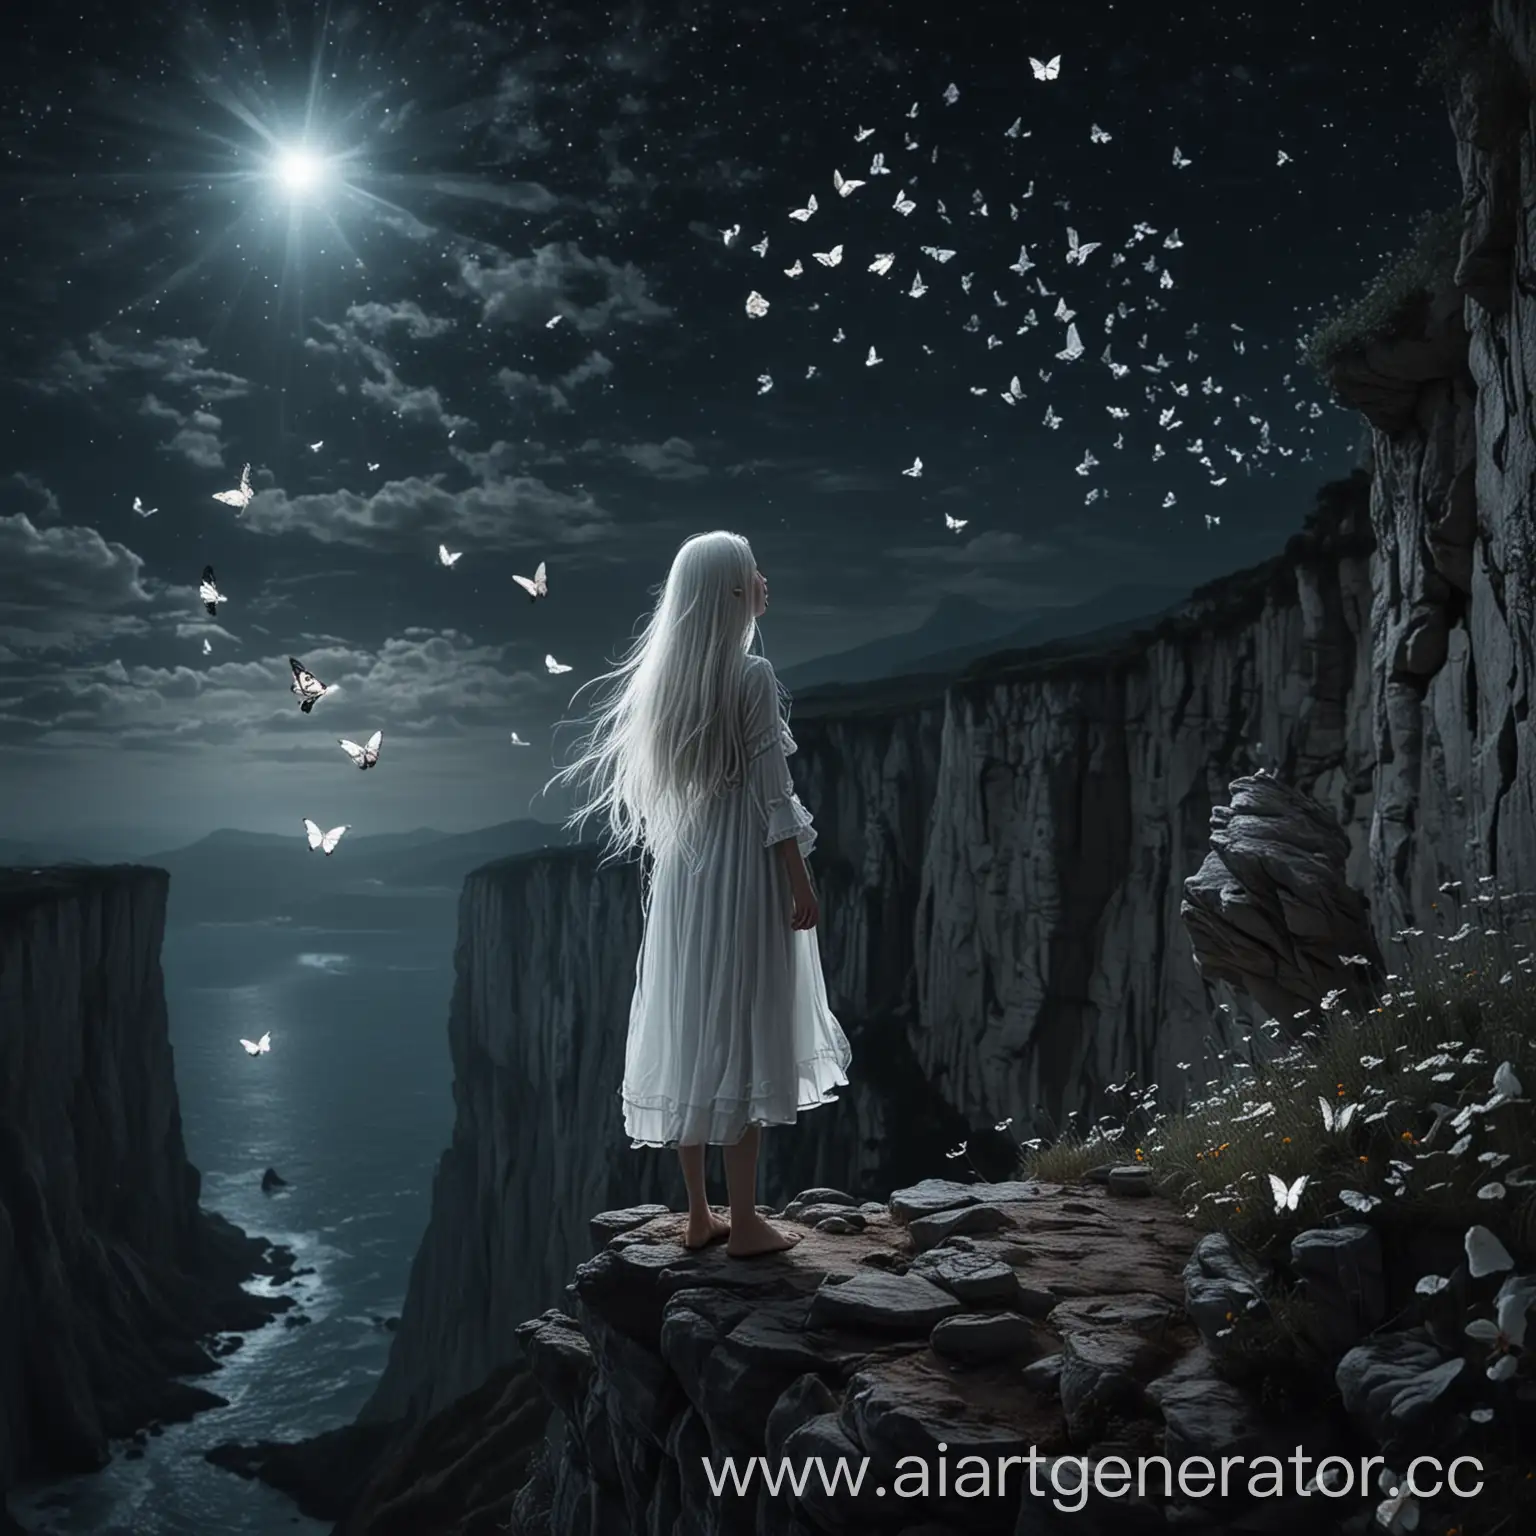 девушка с длинными белыми волосами стоит на краю обрыва ночью, а вокруг нее летают бабочки